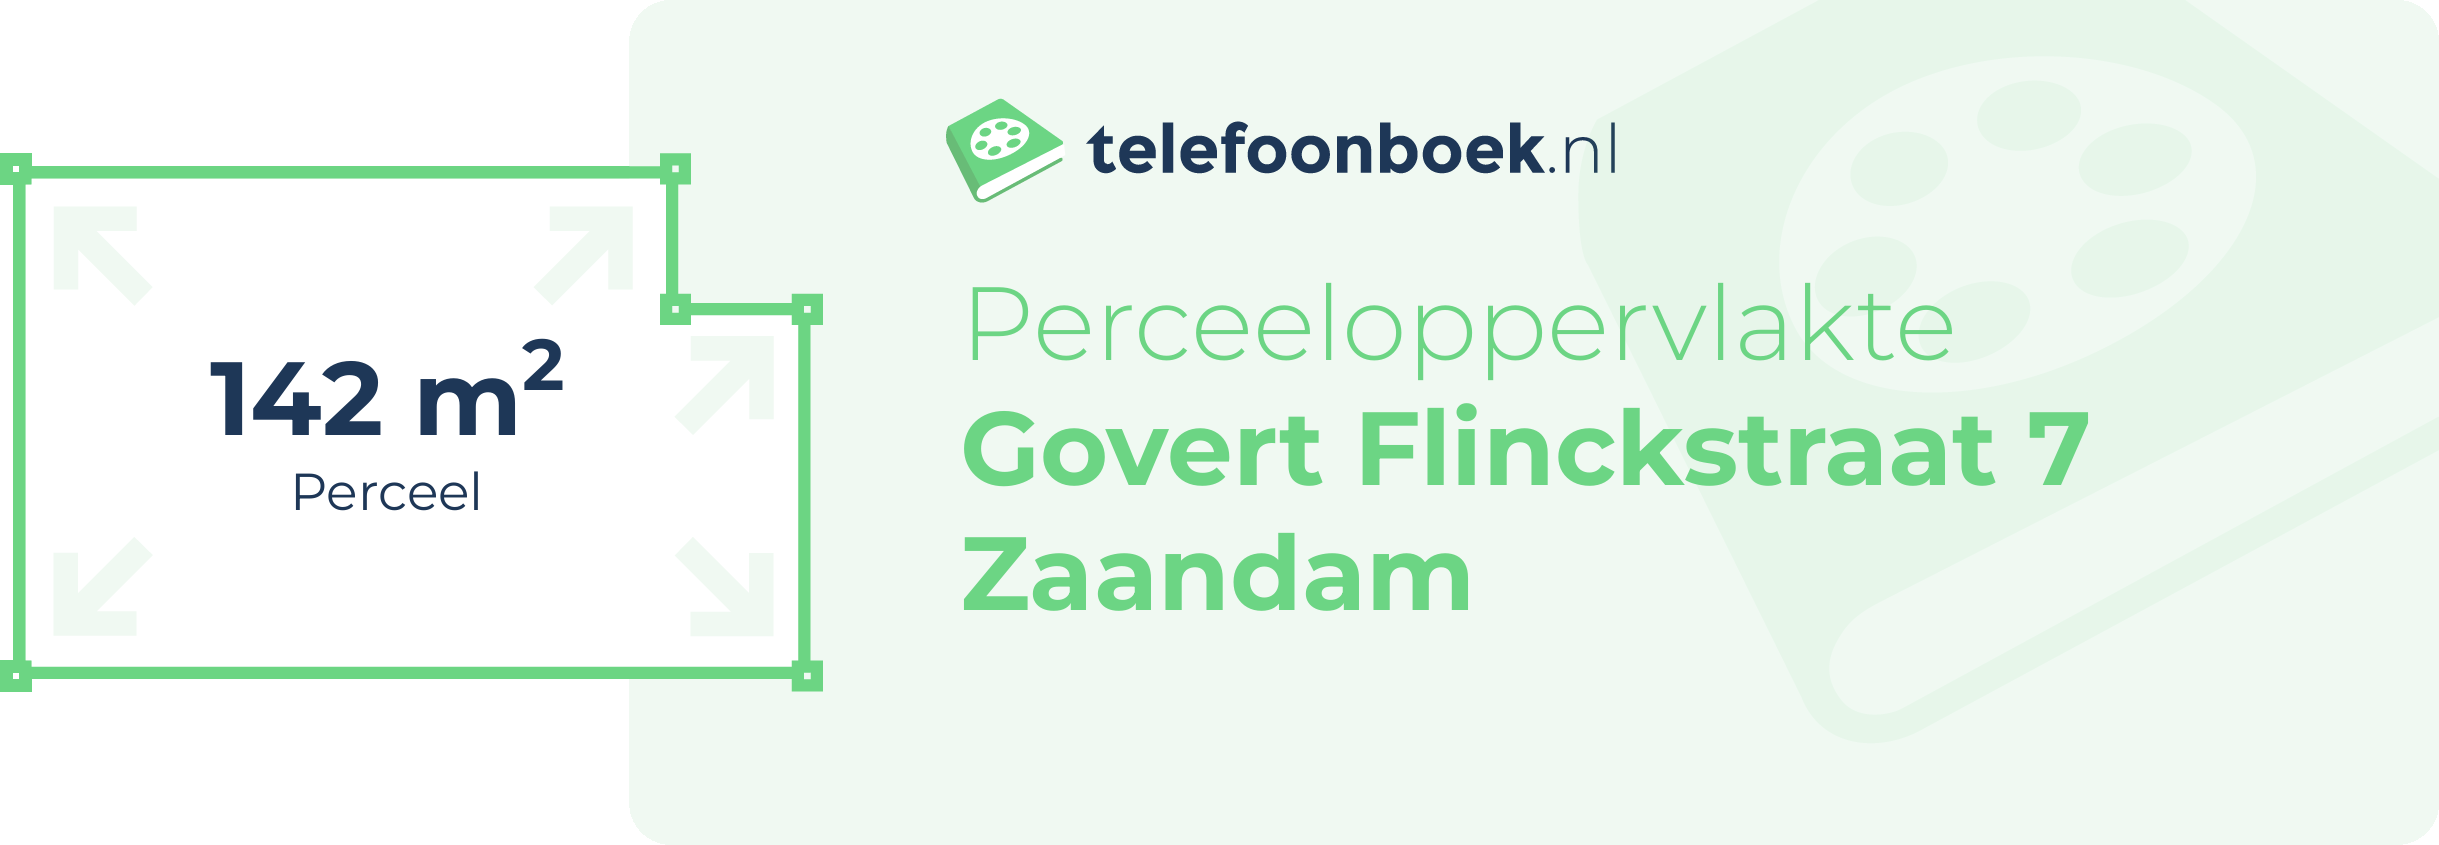 Perceeloppervlakte Govert Flinckstraat 7 Zaandam